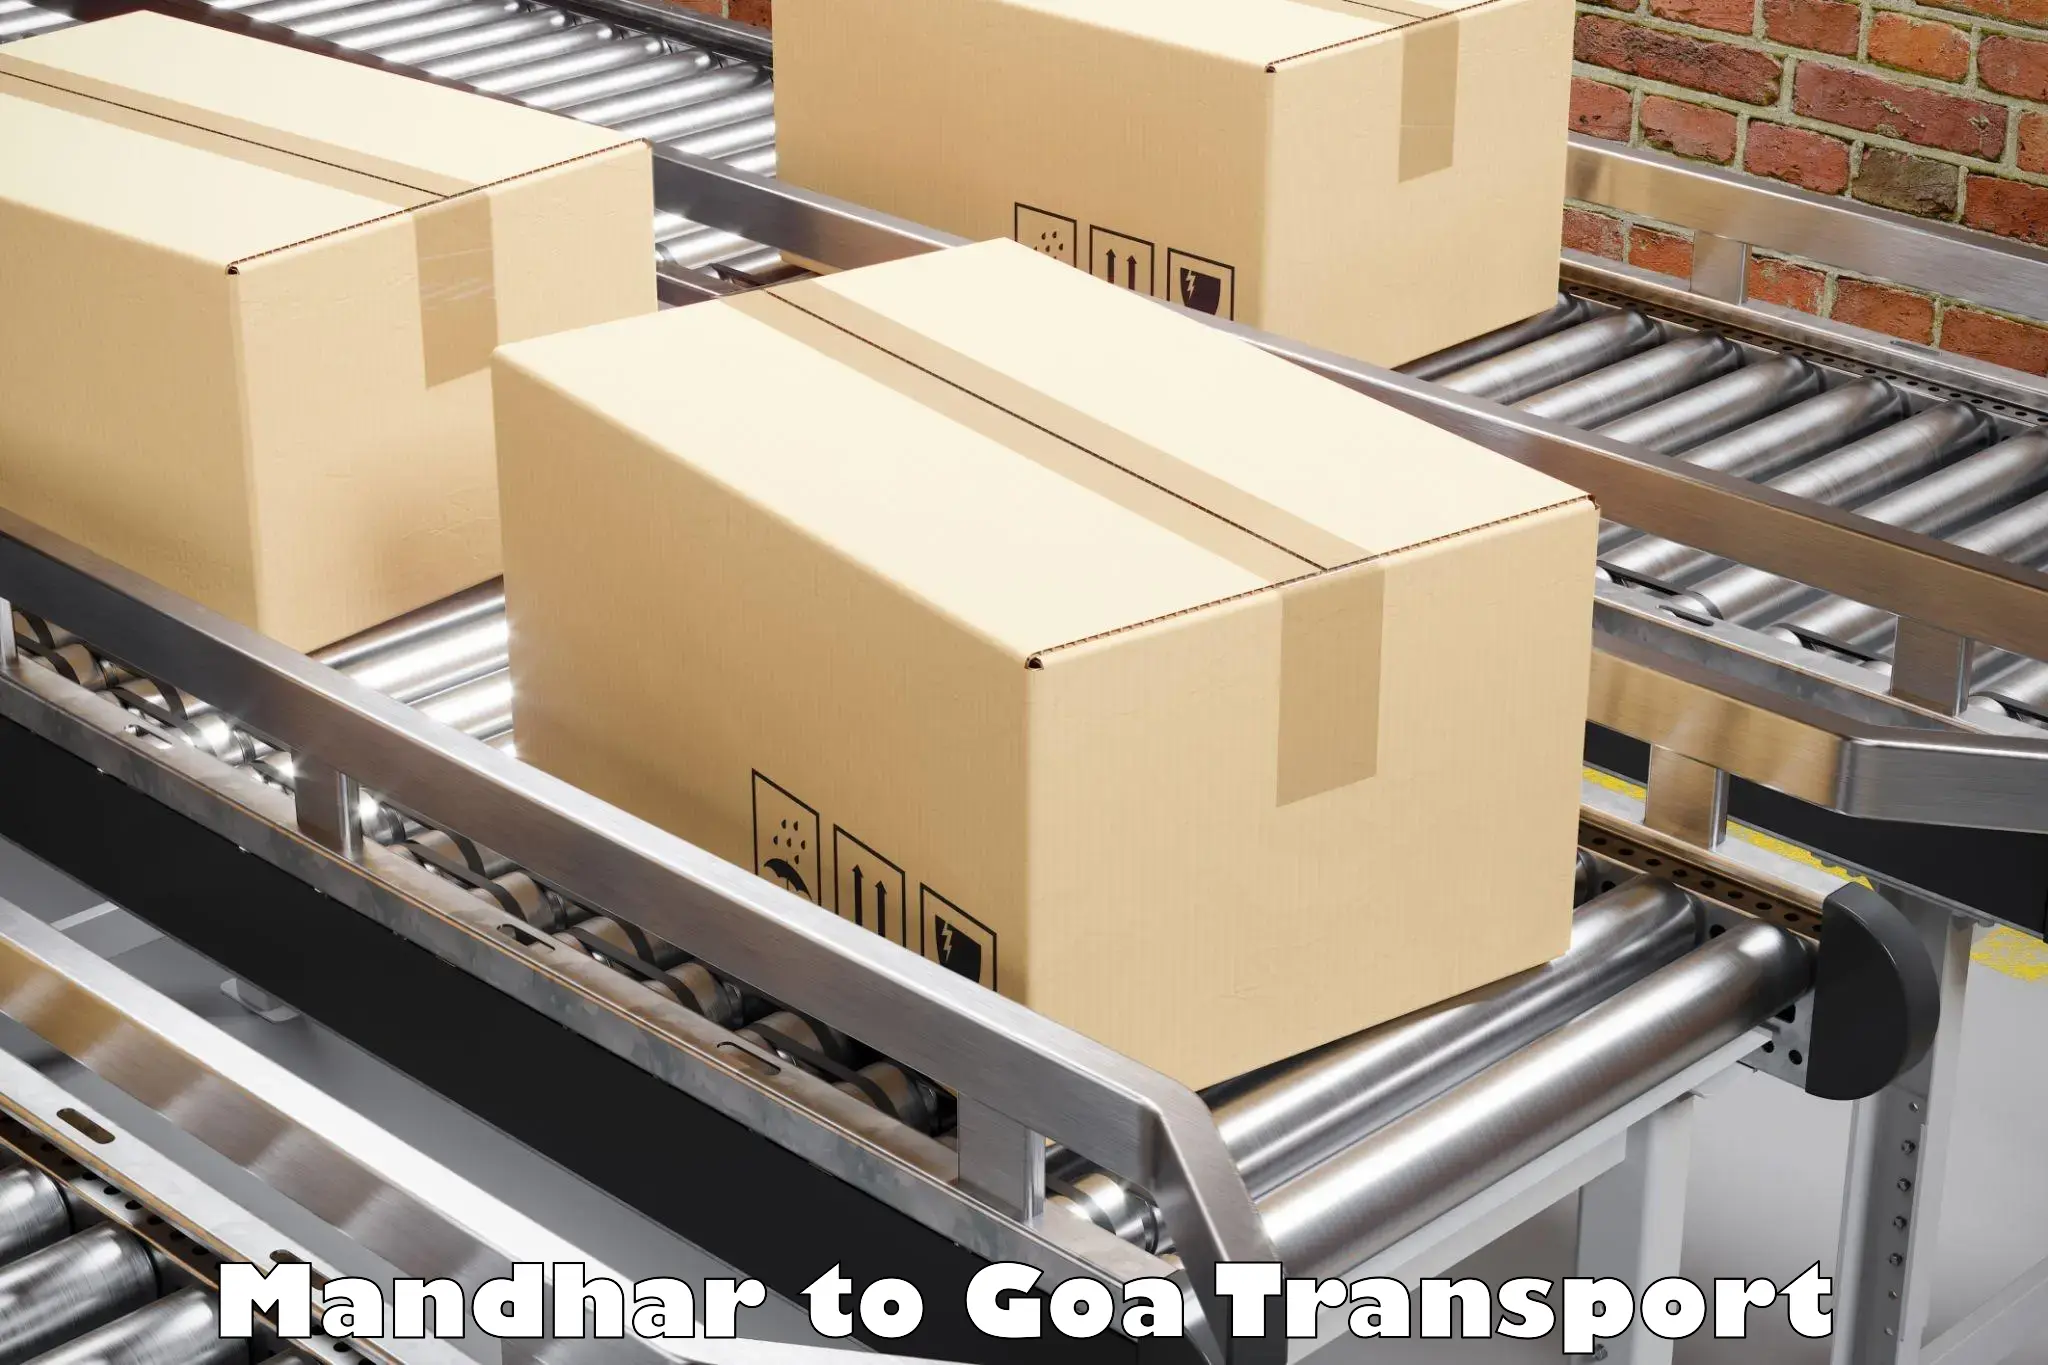 Online transport booking Mandhar to NIT Goa